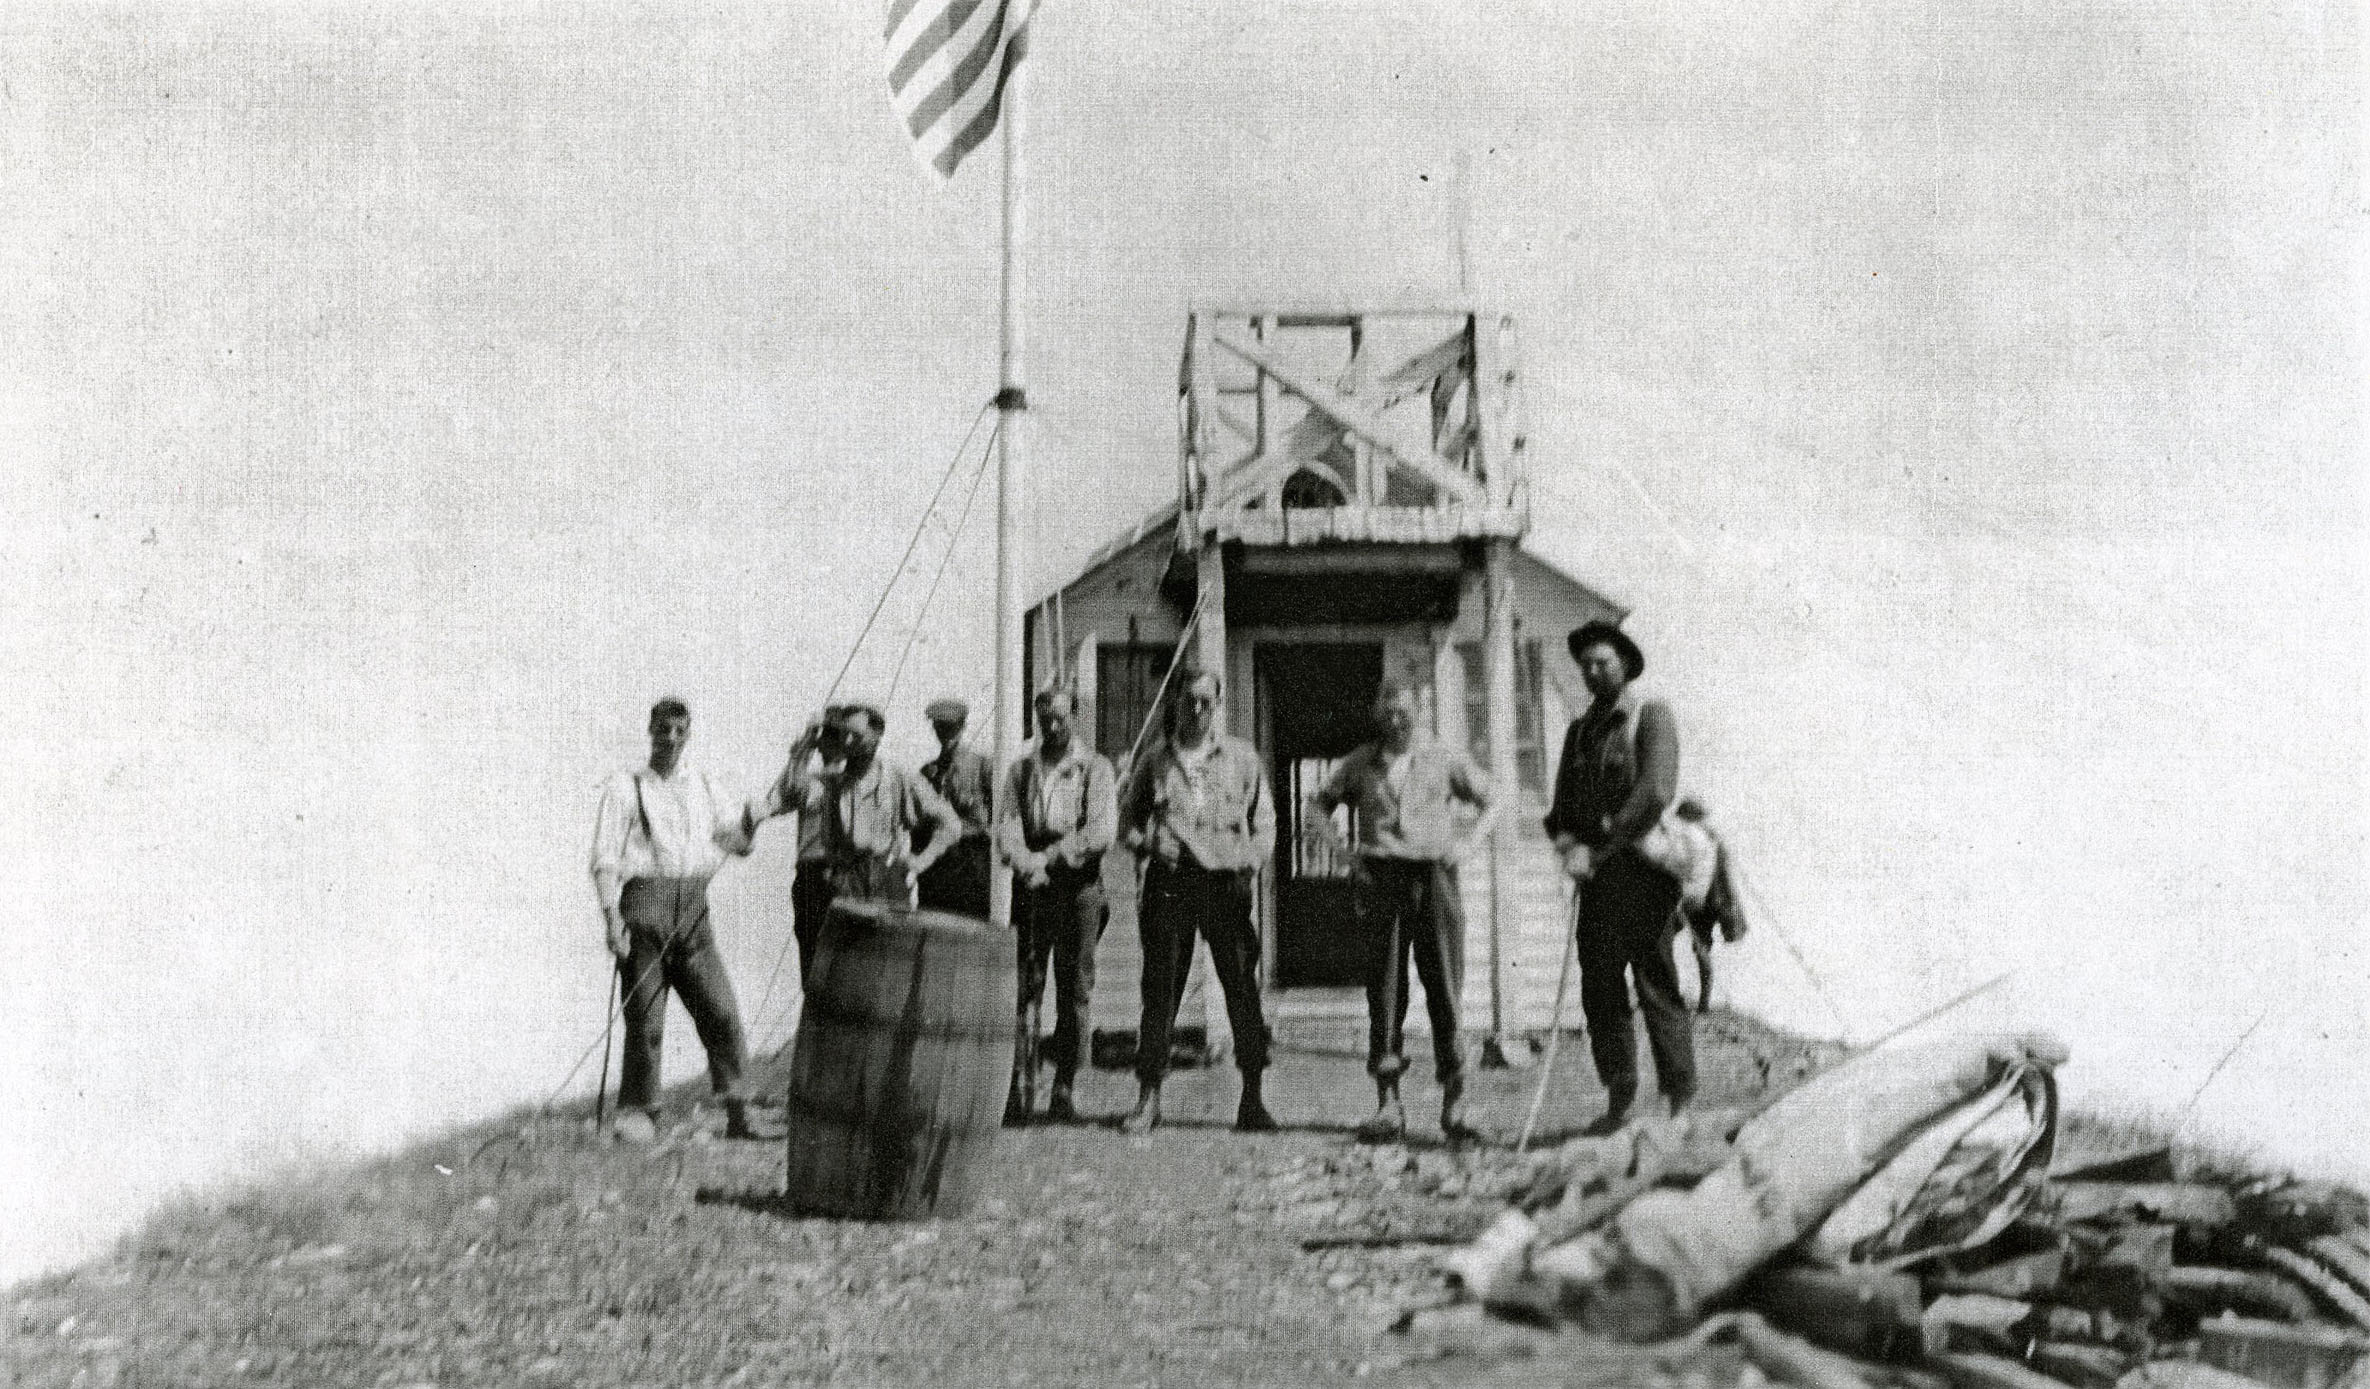 Men raise flag on Saddle Mountain.